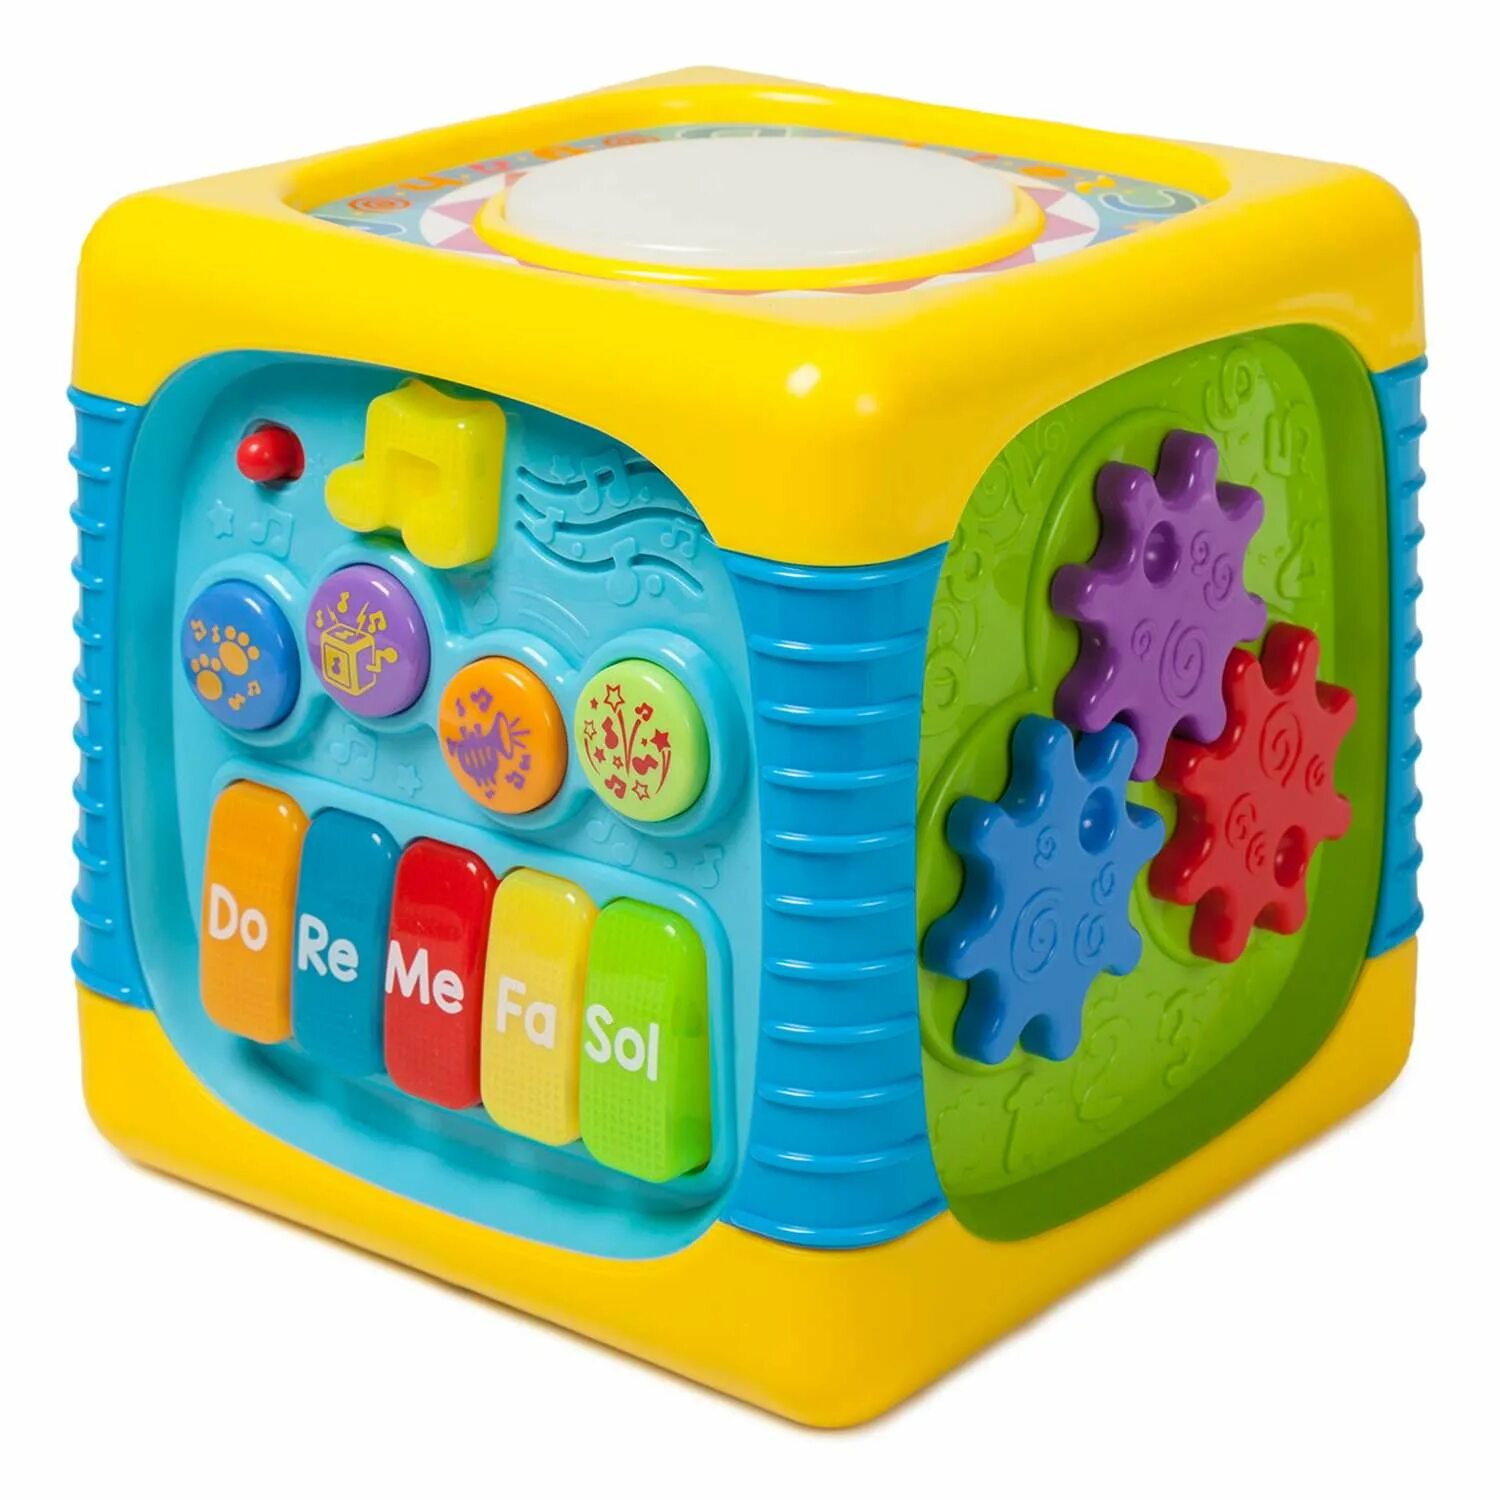 Cube детские. Развивающая игрушка музыкальный куб 0741 Winfun. Кубик развивающий BABYGO. Развивающий кубик BABYGO свет звук. Развивающий музыкальный кубик Winfun.